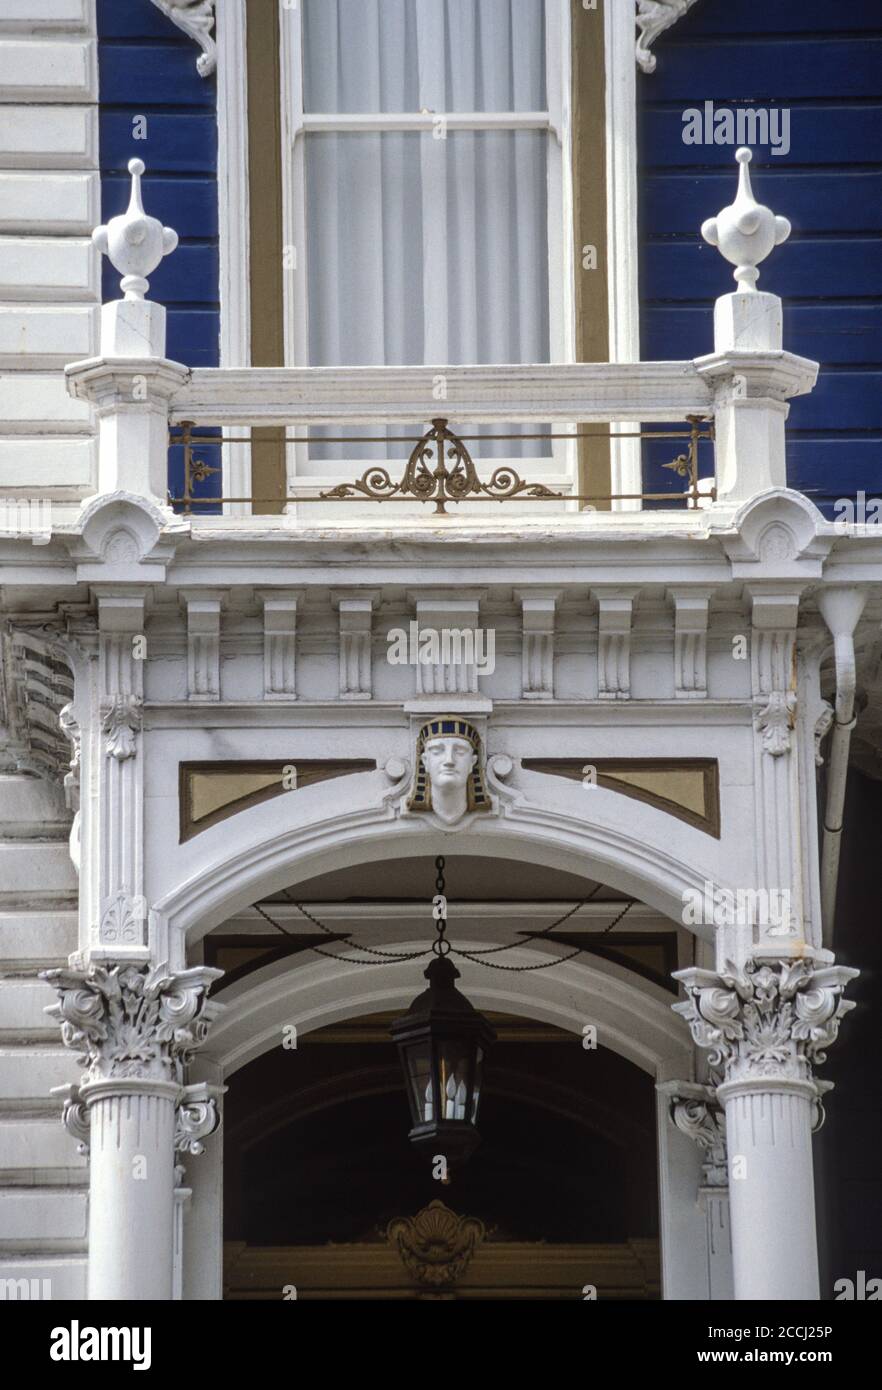 San Francisco, Californie, États-Unis. Pacific Heights, motif égyptien sur la maison de style victorien, California Street. Banque D'Images